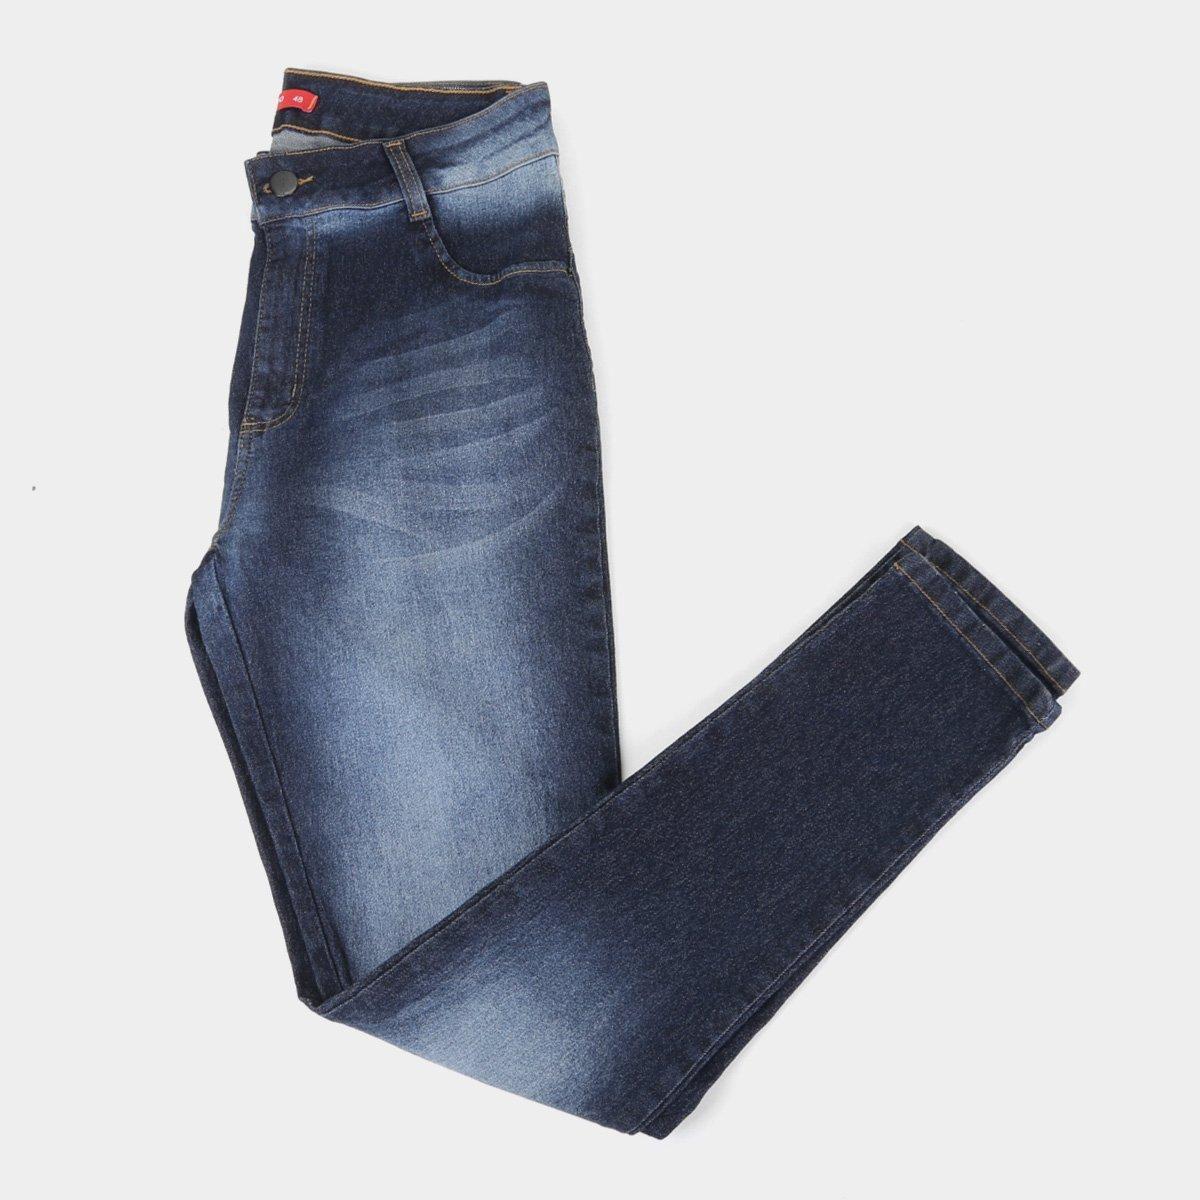 jeans biotipo cintura alta